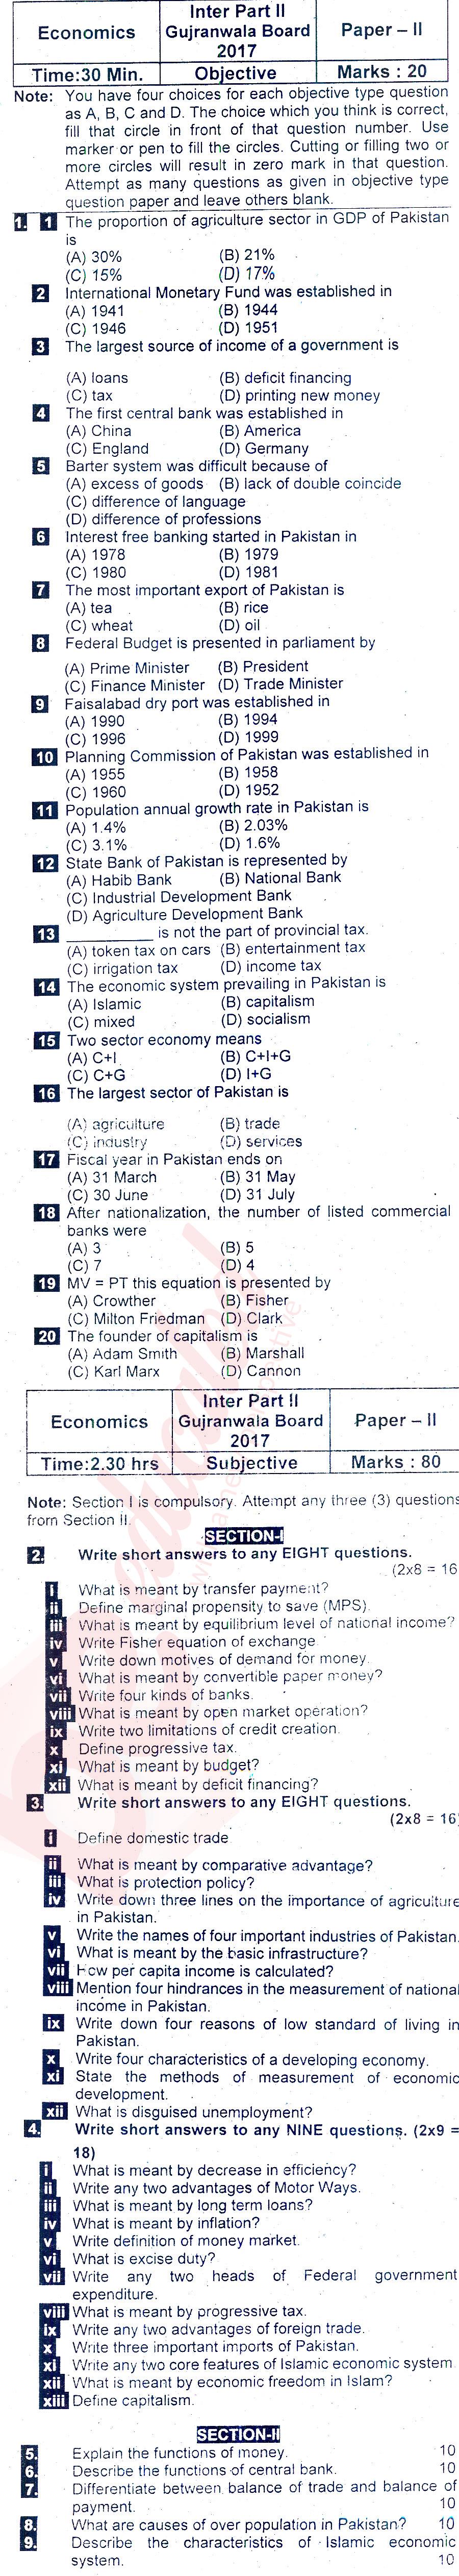 Economics FA Part 2 Past Paper Group 2 BISE Gujranwala 2017